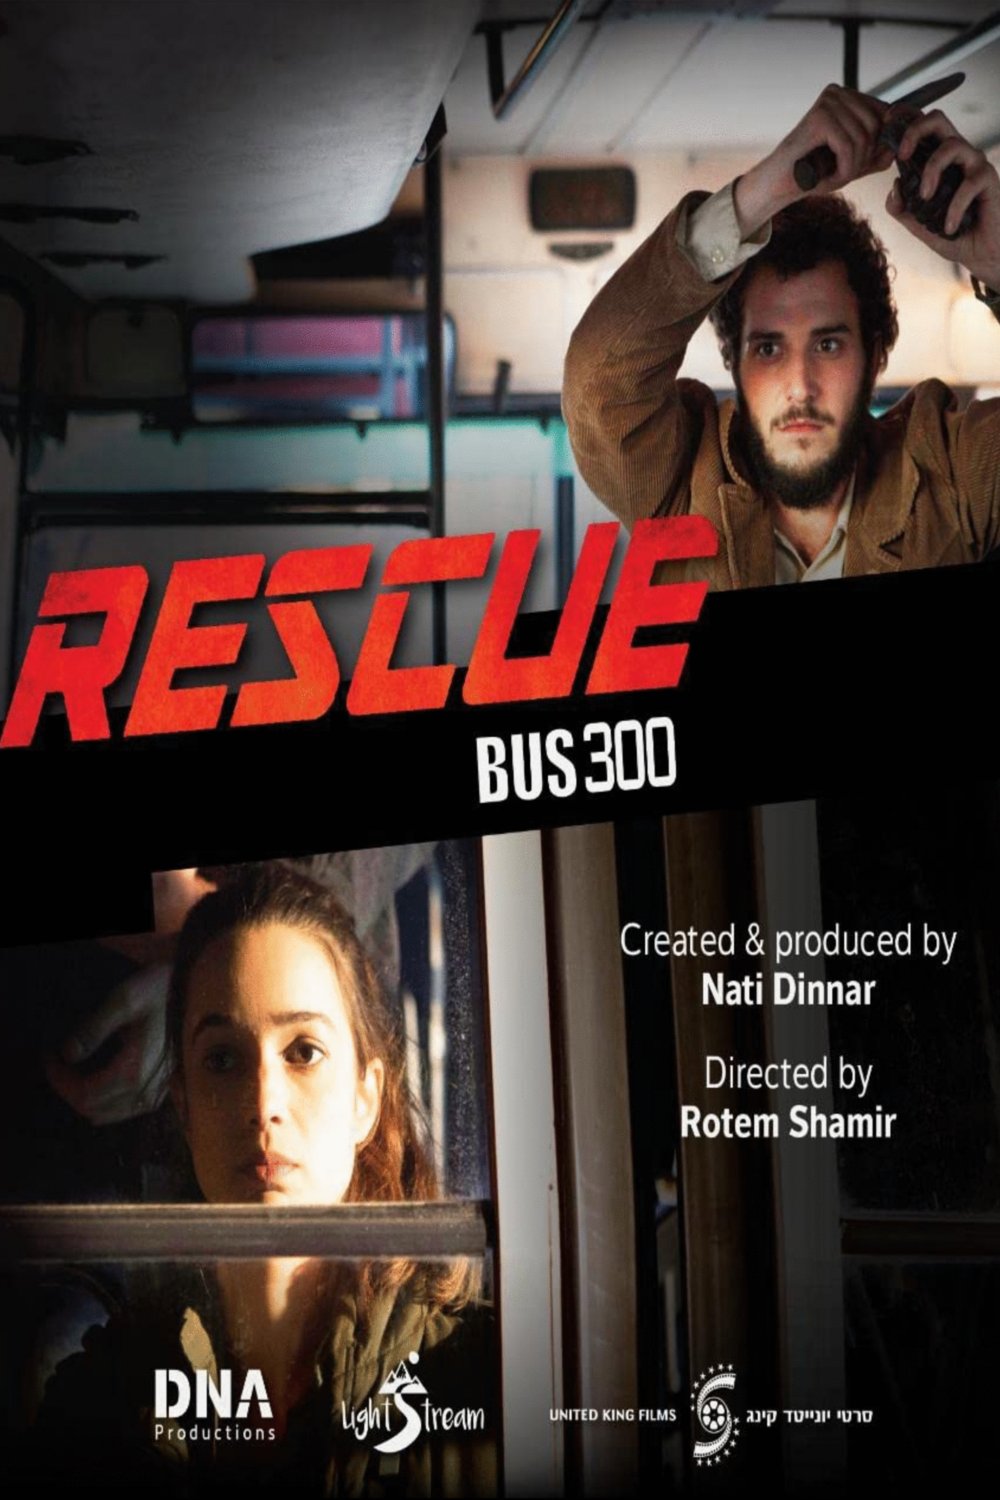 L'affiche originale du film Rescue Bus 300 en hébreu